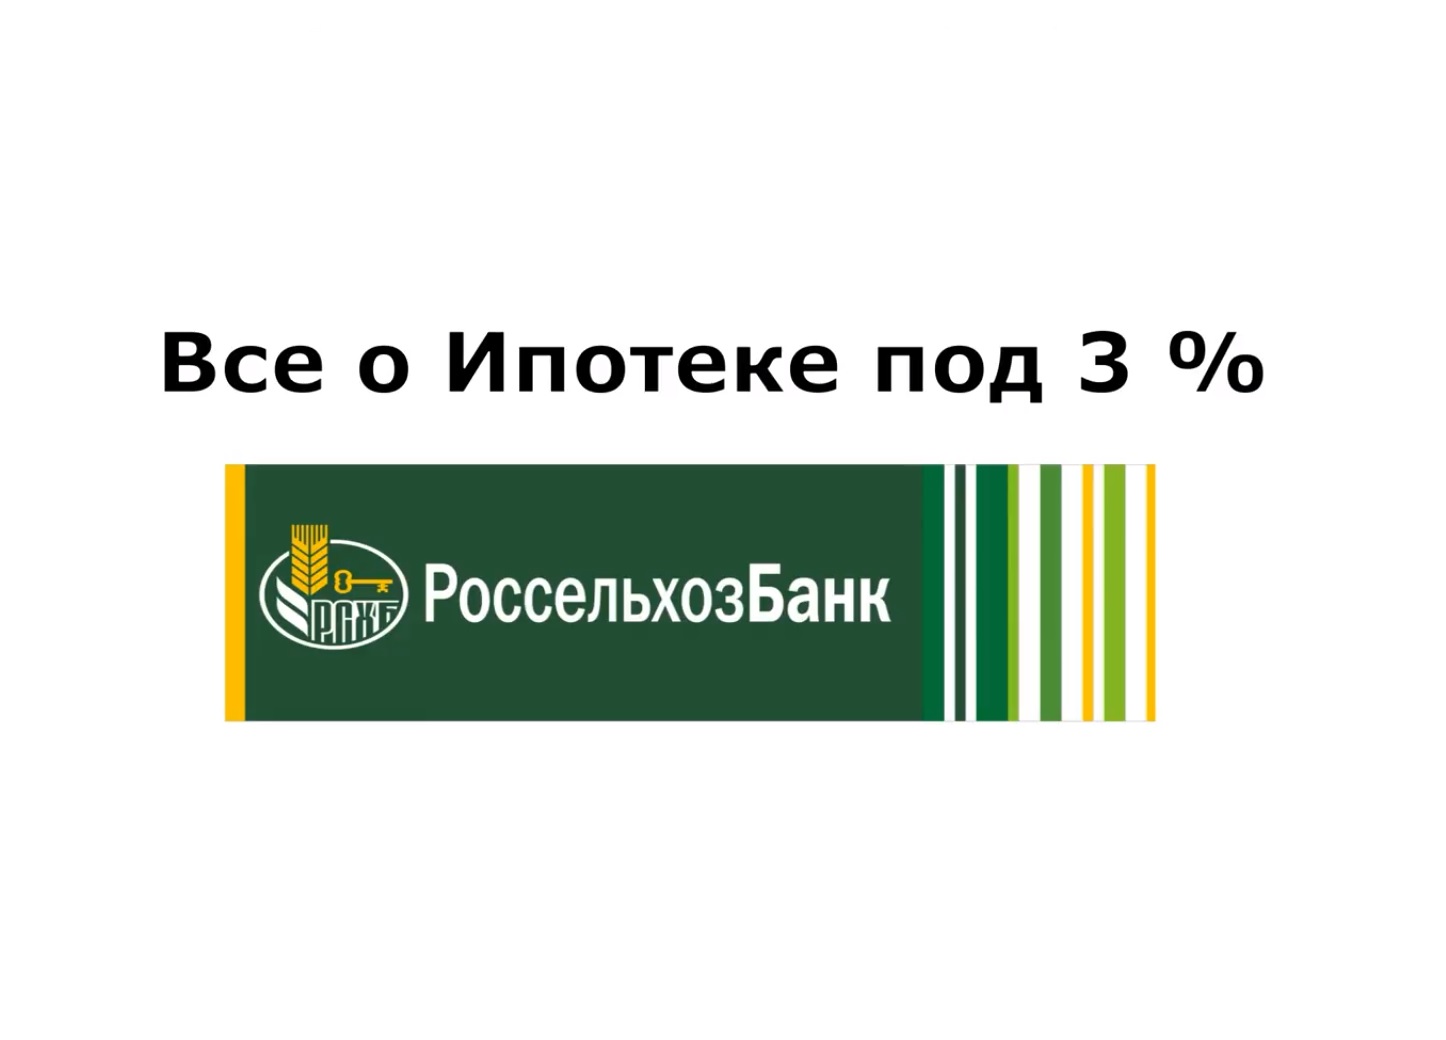 Ипотека под 3% - консультация руководителя банка РоссельхозБанка.